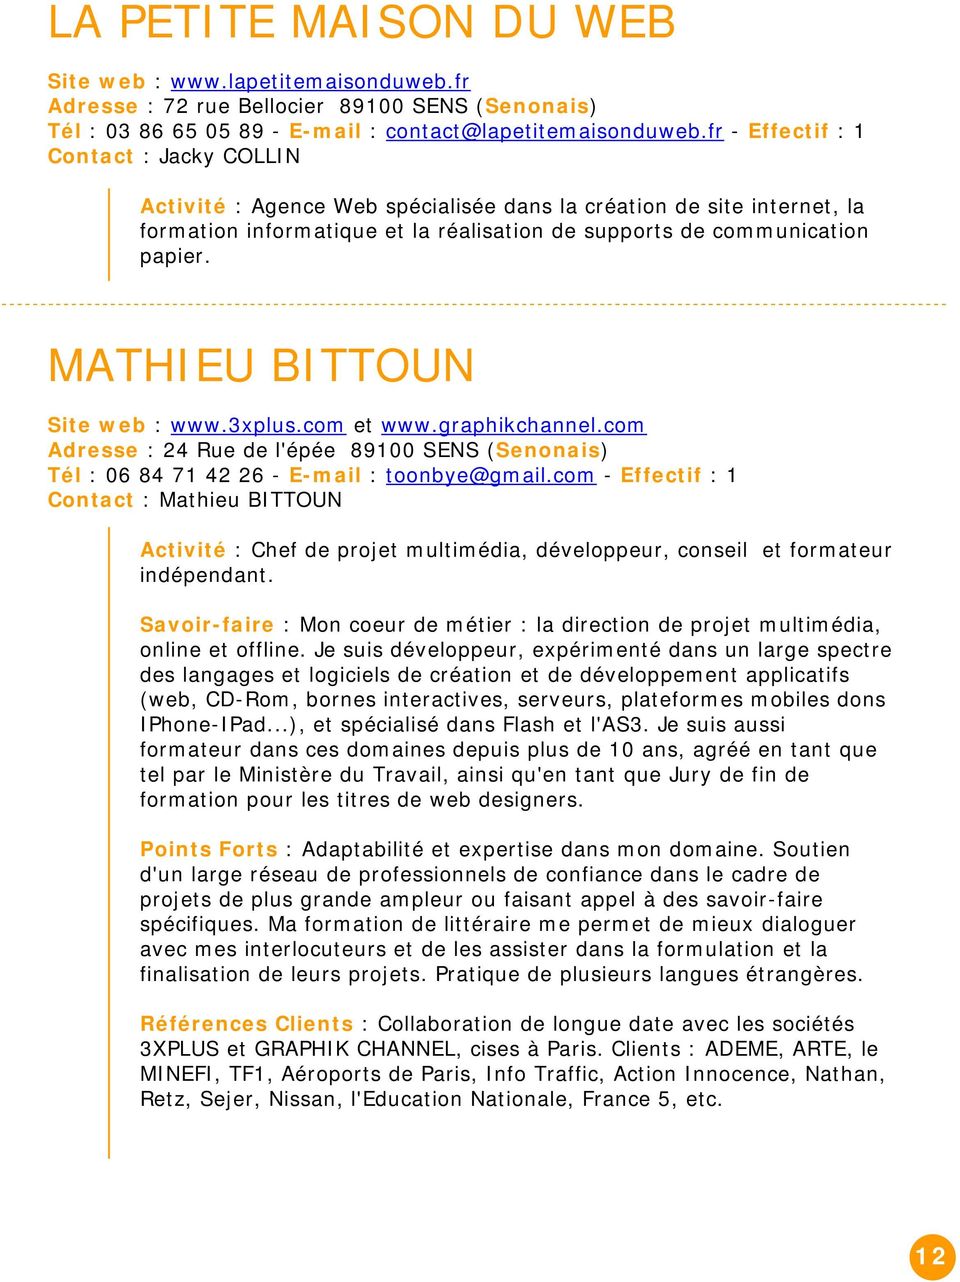 MATHIEU BITTOUN Site web : www.3xplus.com et www.graphikchannel.com Adresse : 24 Rue de l'épée 89100 SENS (Senonais) Tél : 06 84 71 42 26 - E-mail : toonbye@gmail.